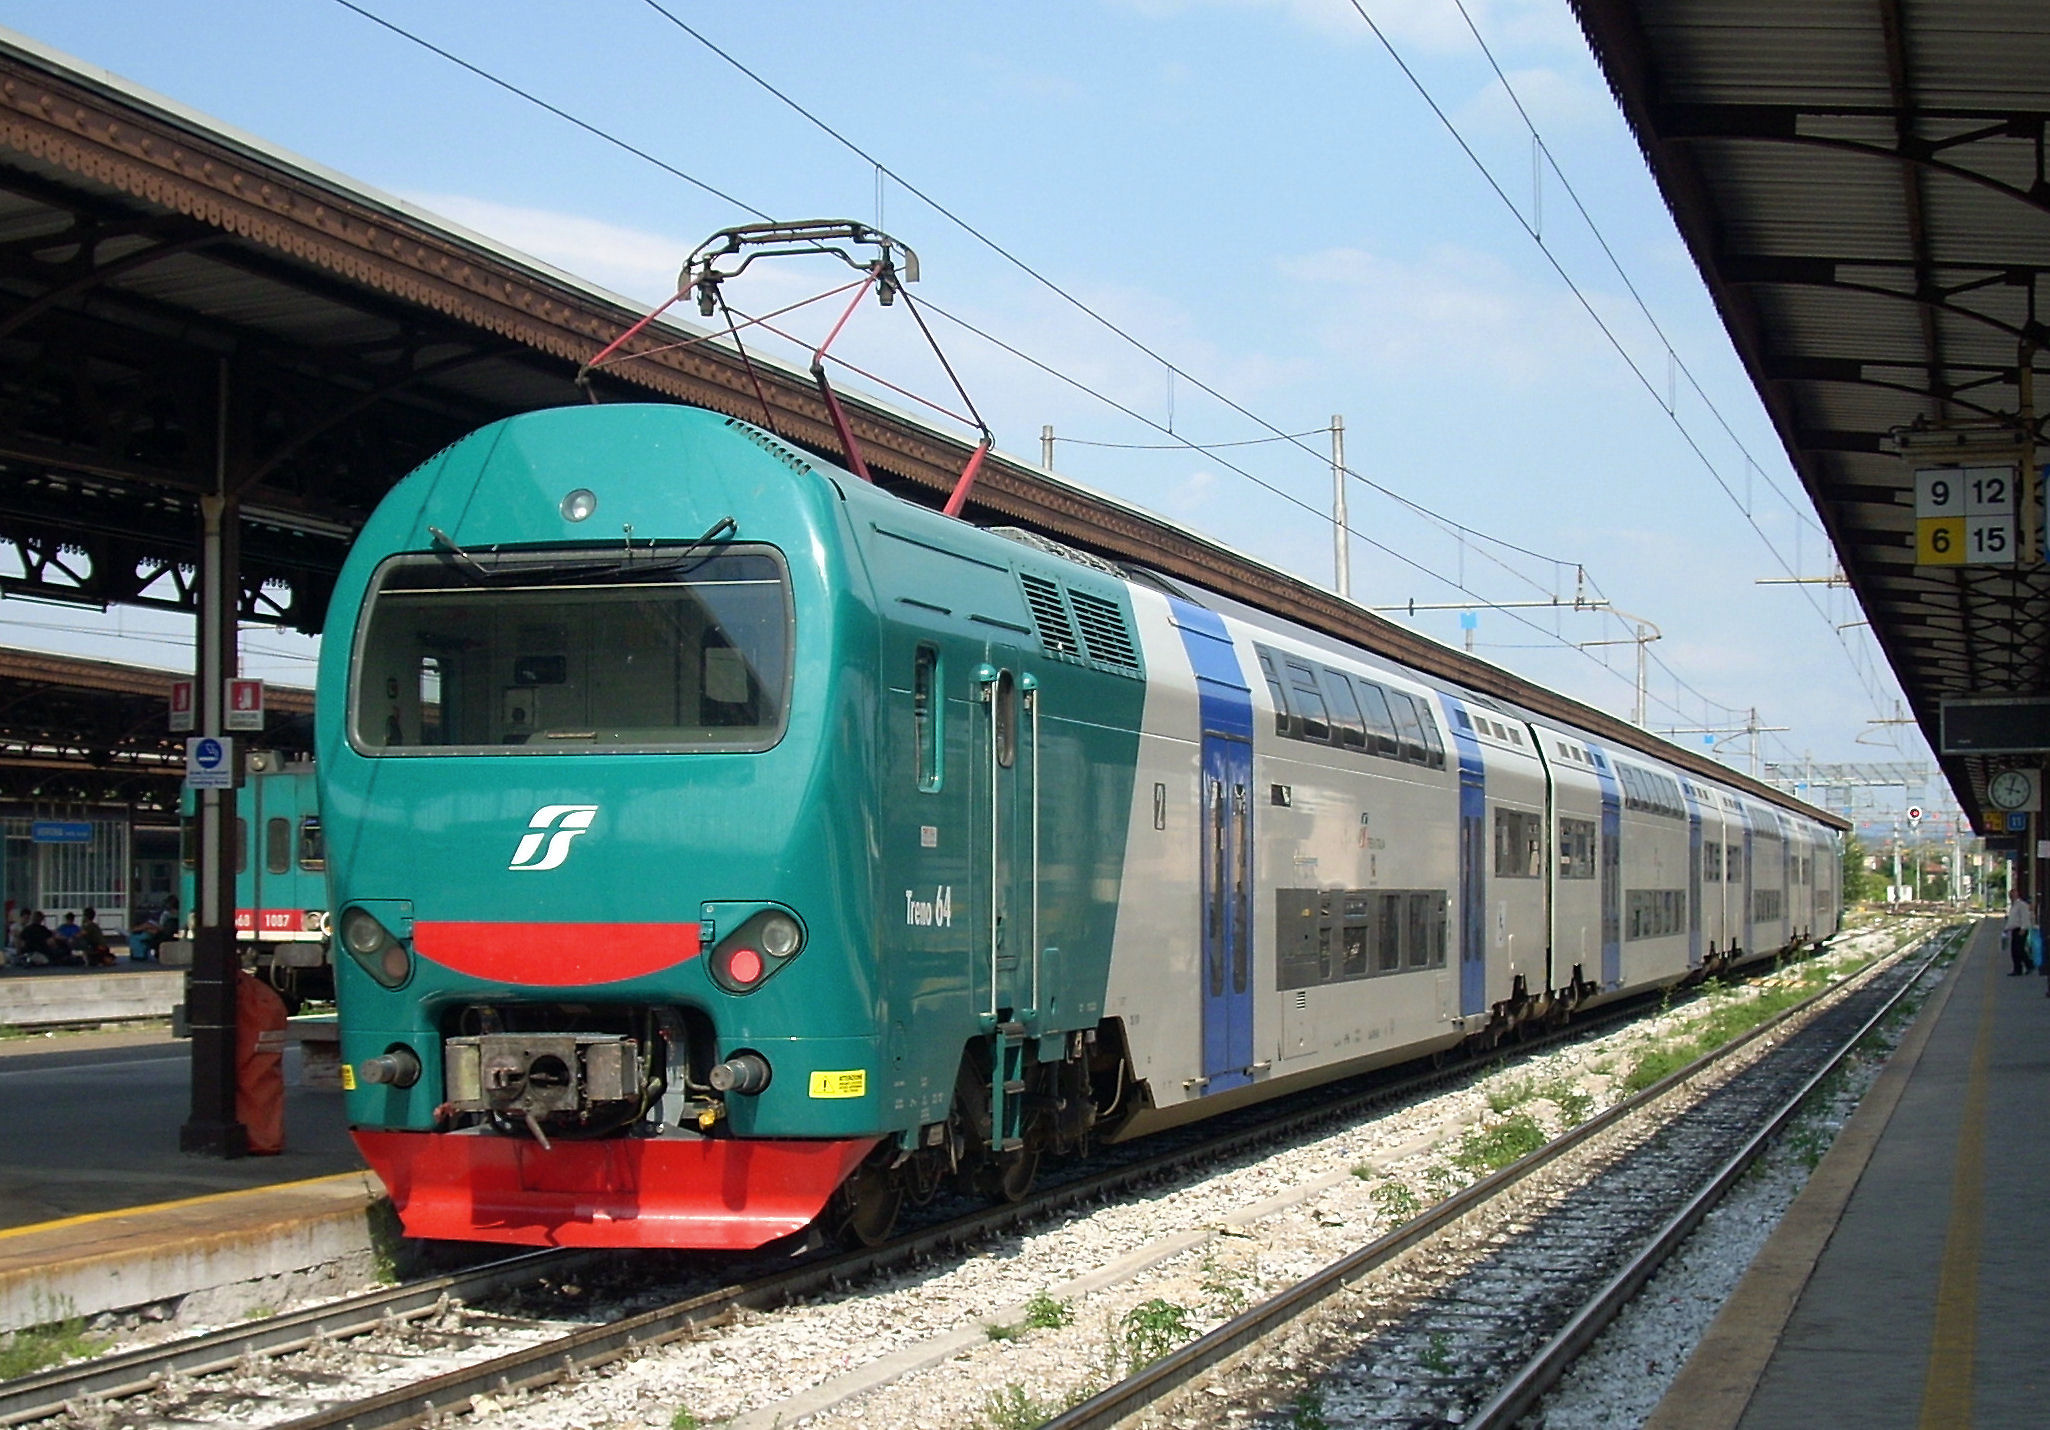 Guasto al sistema di interscambio: ritardi nei treni a Trofarello